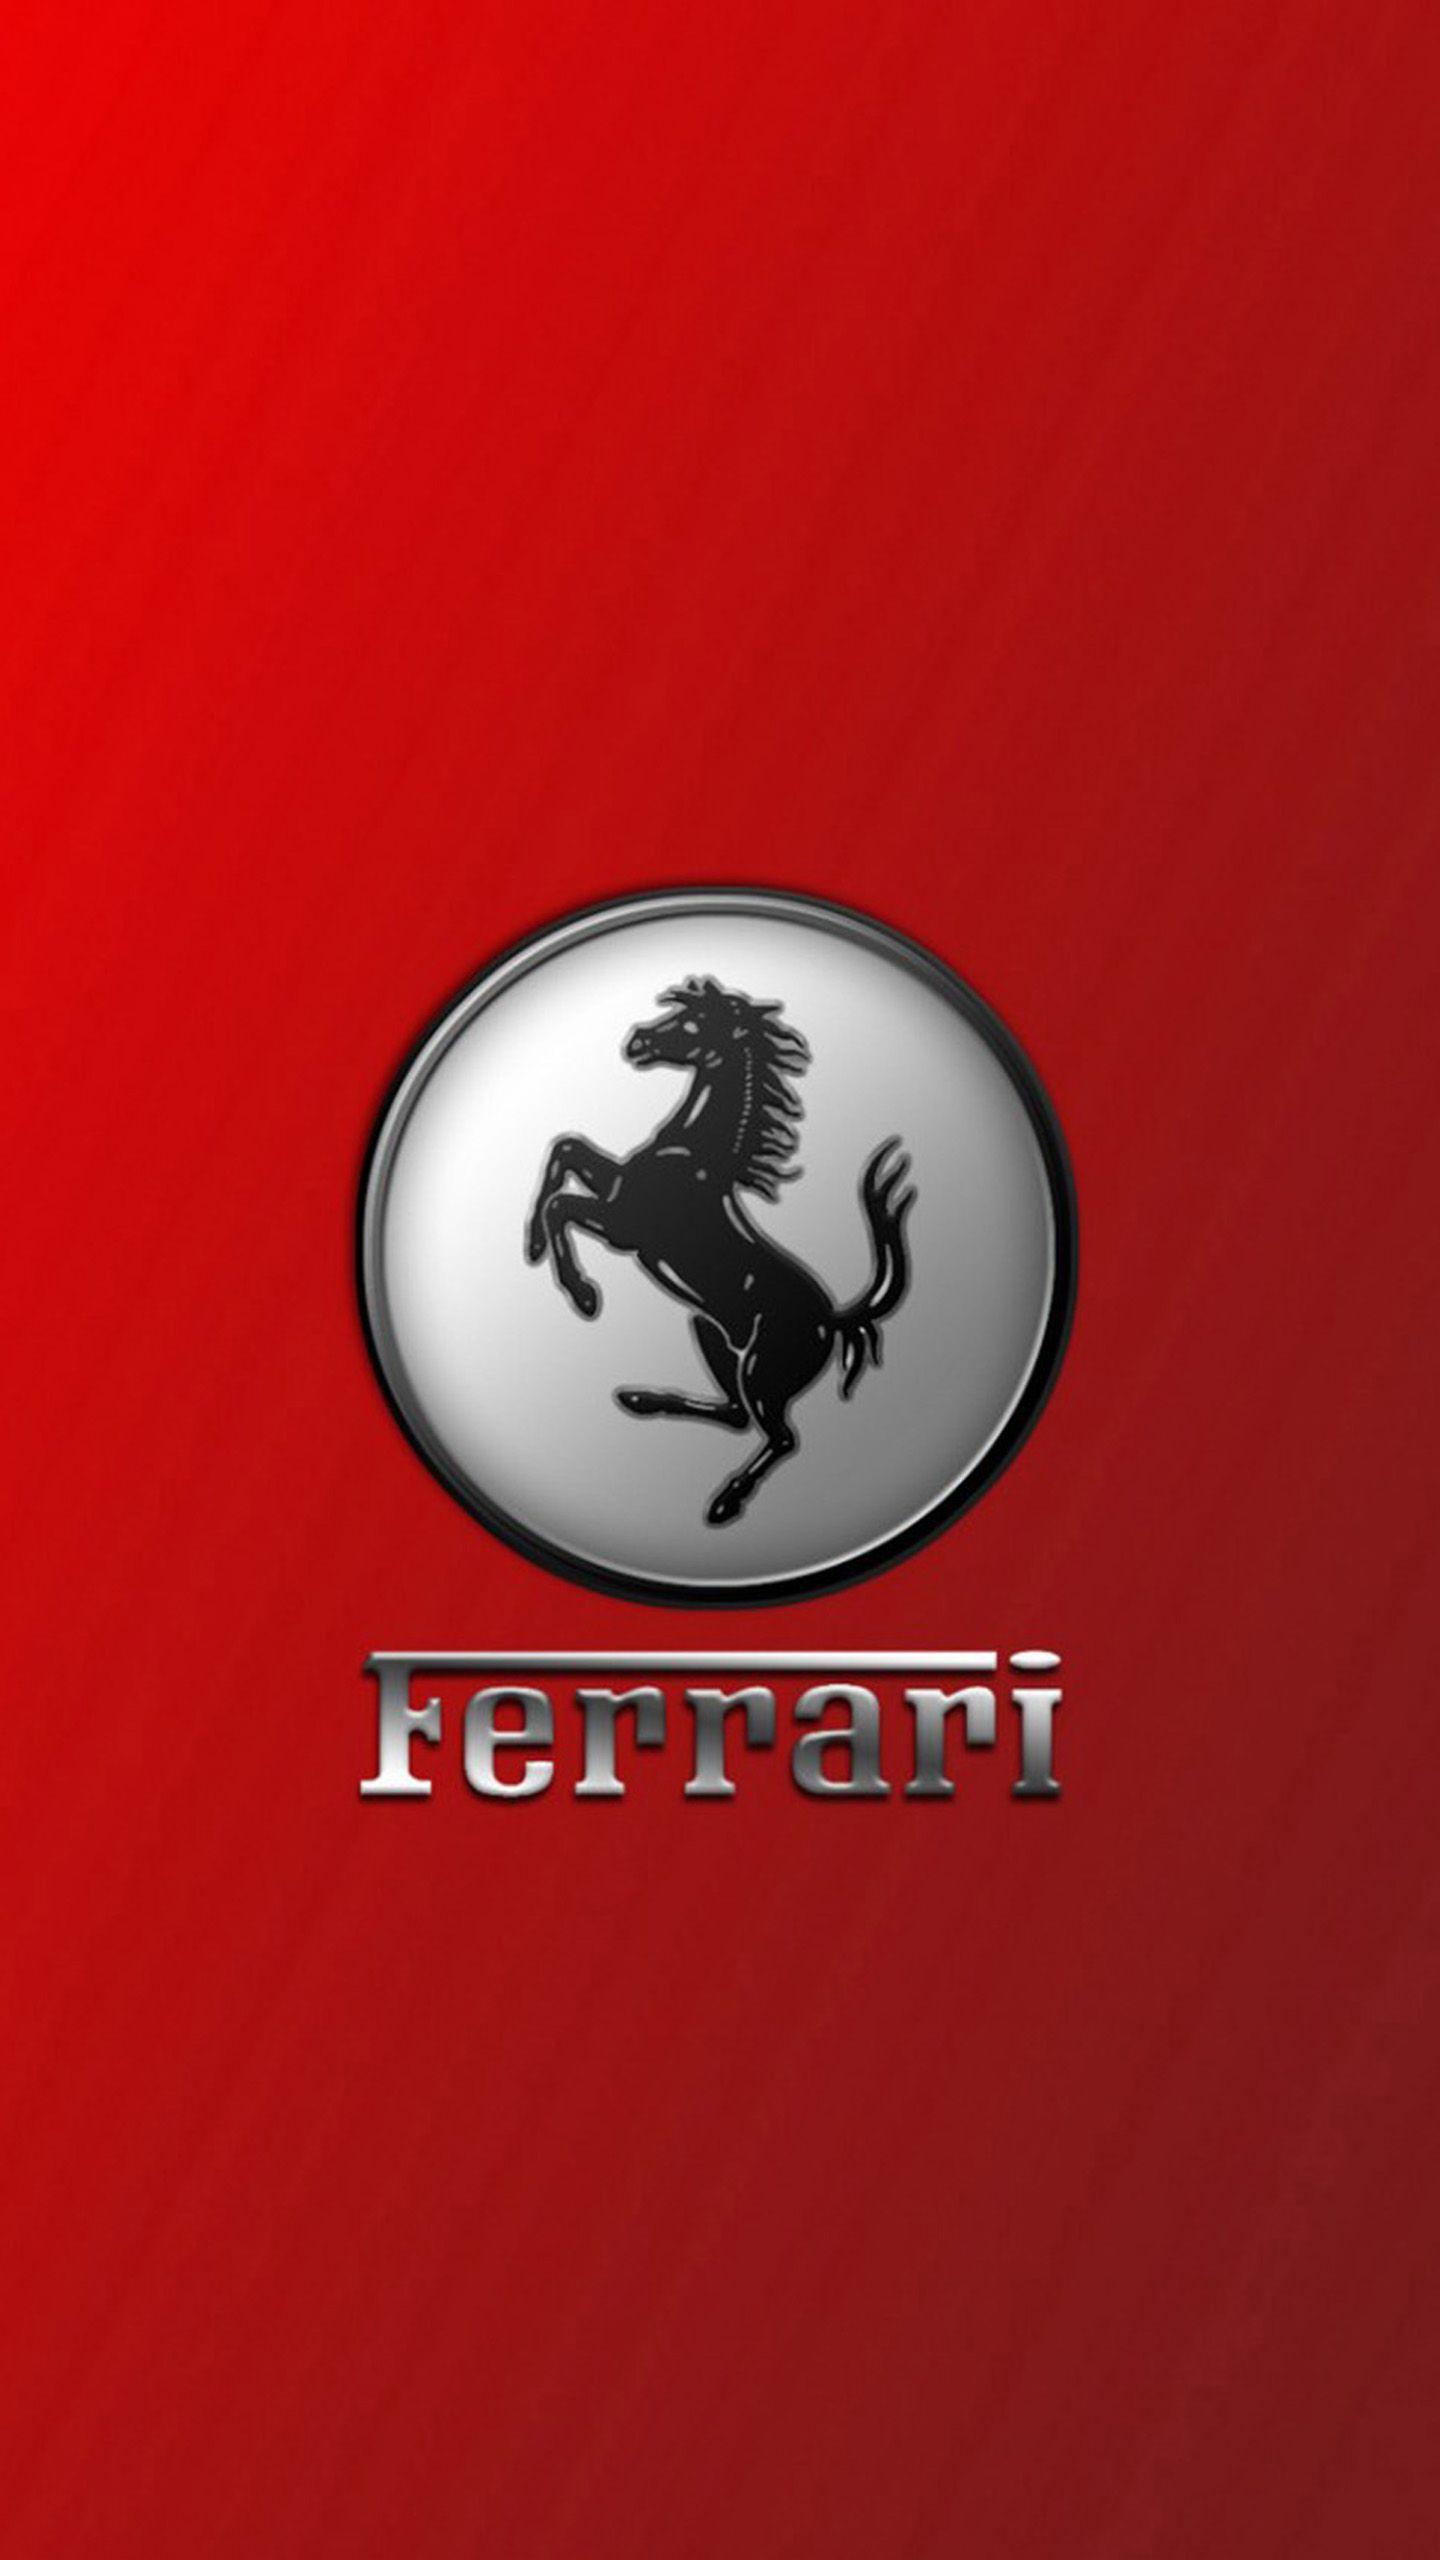 Ferrari Logo Galaxy S6 Wallpaper (1440x2560)